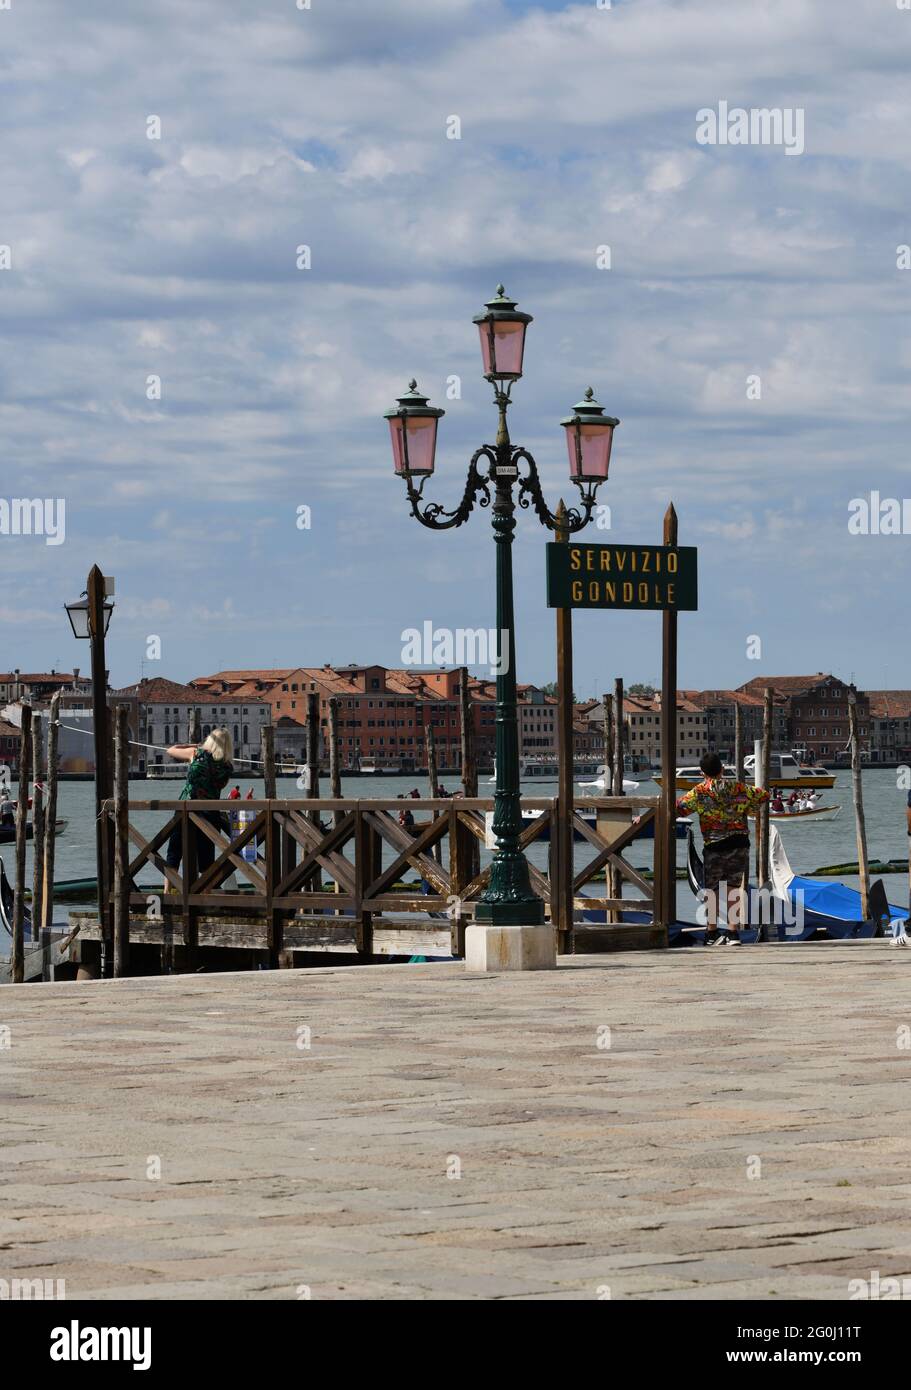 Strassenlaterne am Eingang zum Markusplatz in Venedig neben einer menschenleeren Anlegestelle gegen den bewölkten Himmel Foto Stock